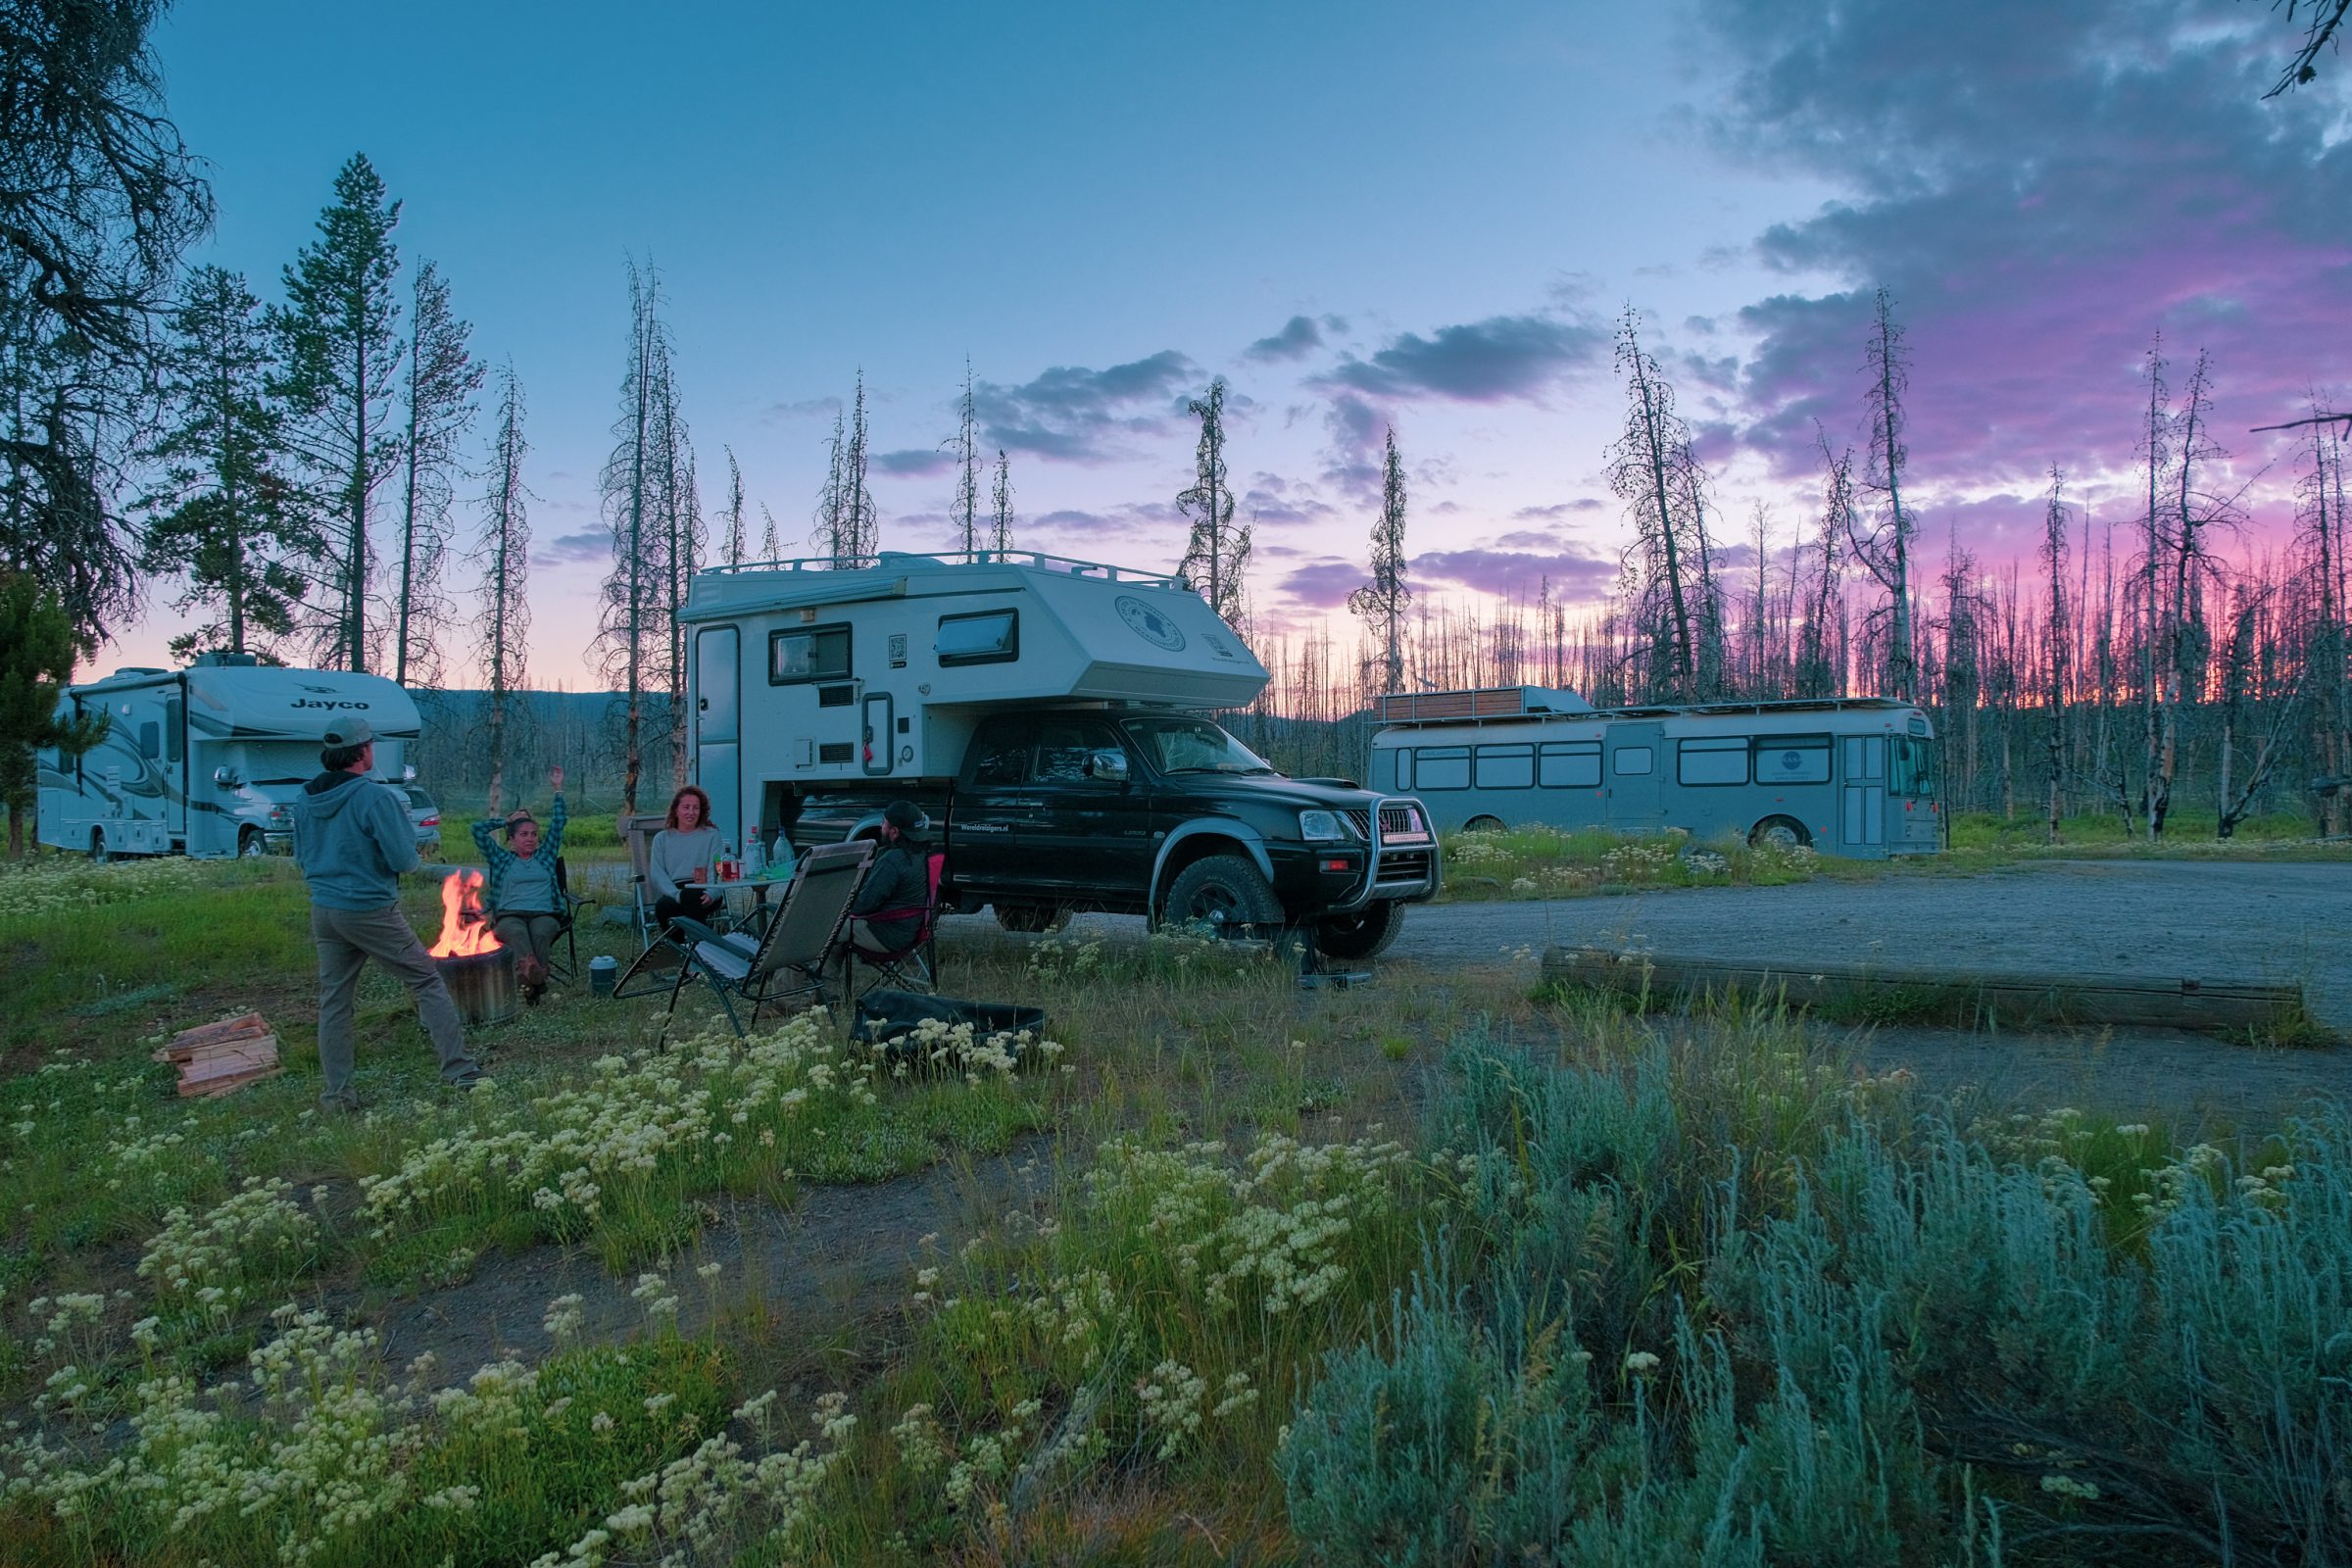 Kampvuur tijdens wildkamperen vlakbij Yellowstone | Het onderwerp wapens kwam ruim aan bod